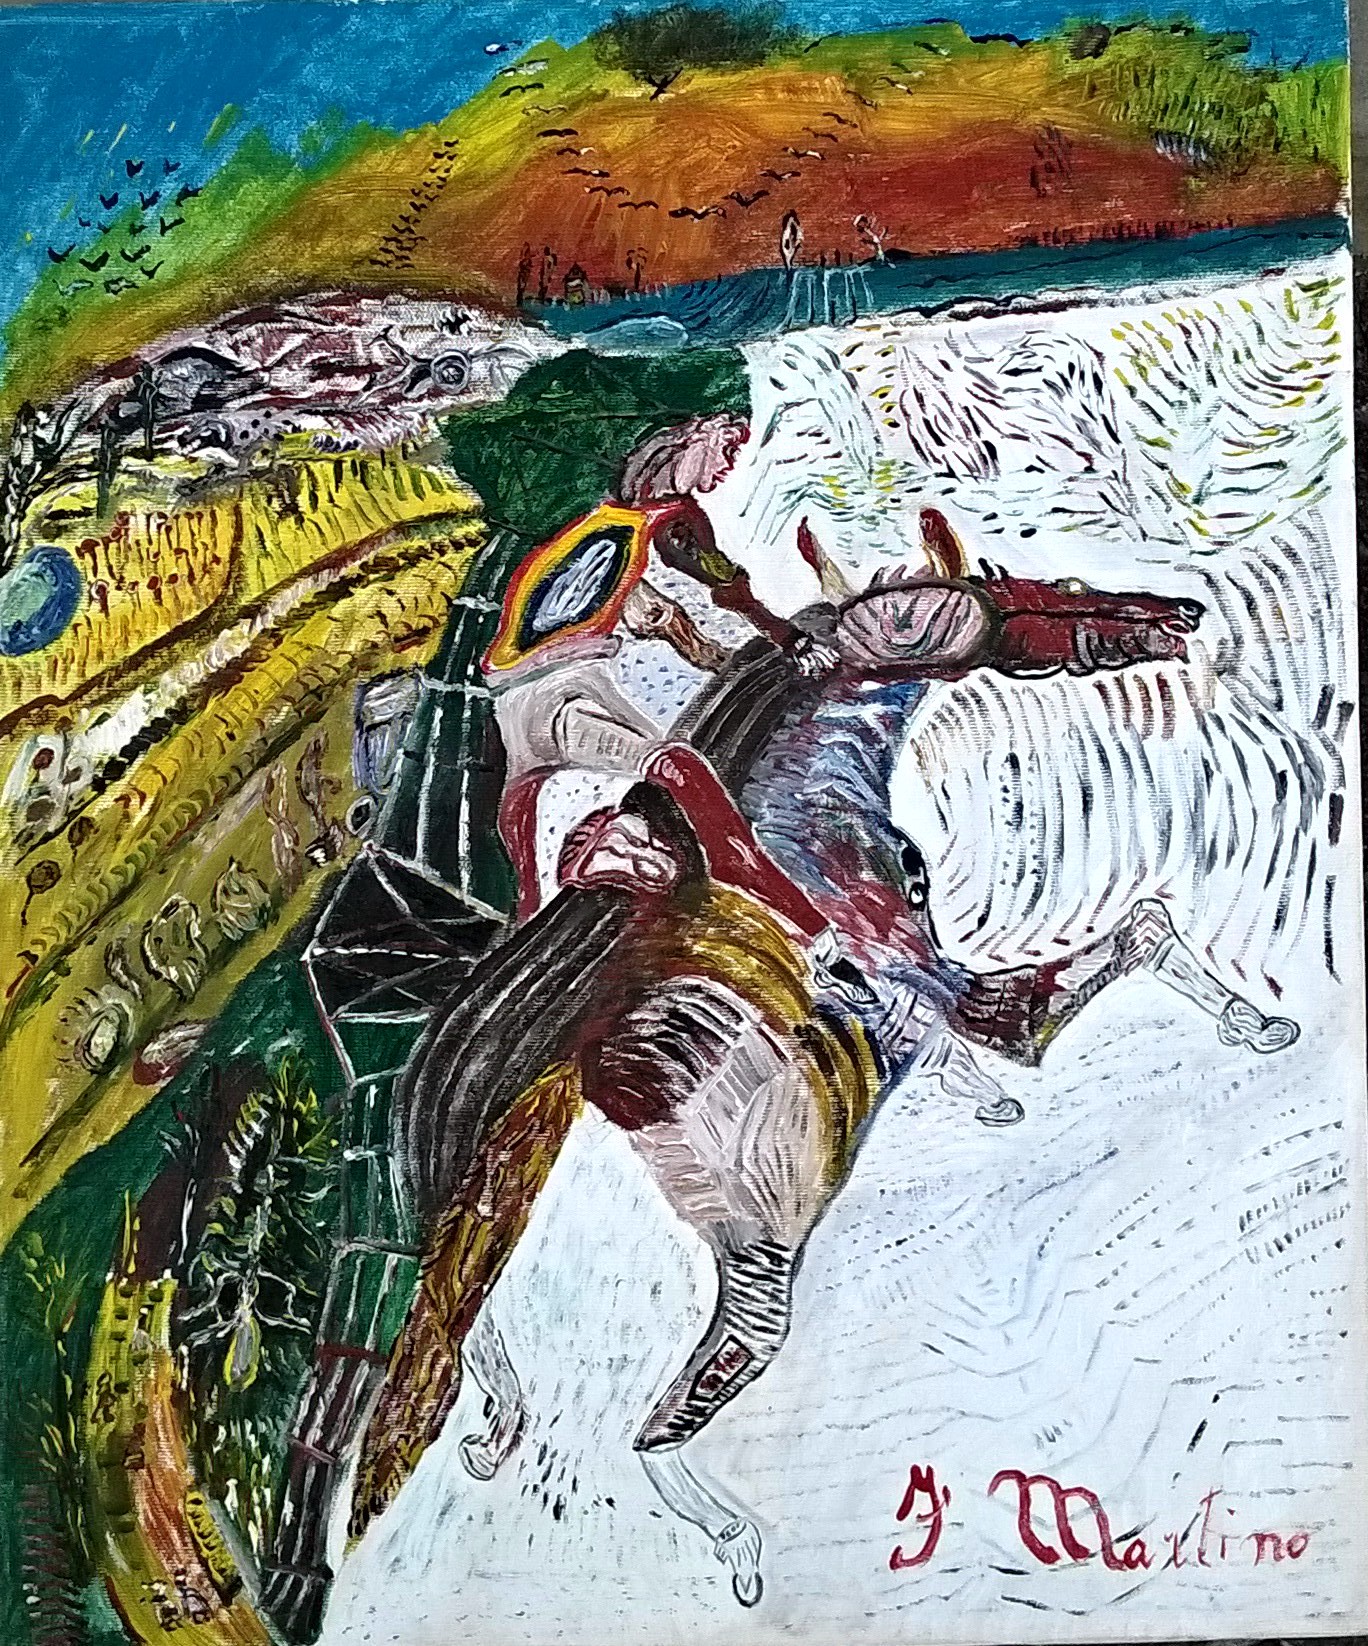 Martino Fiorattini, Senza titolo, olio su tela, 60x50 cm